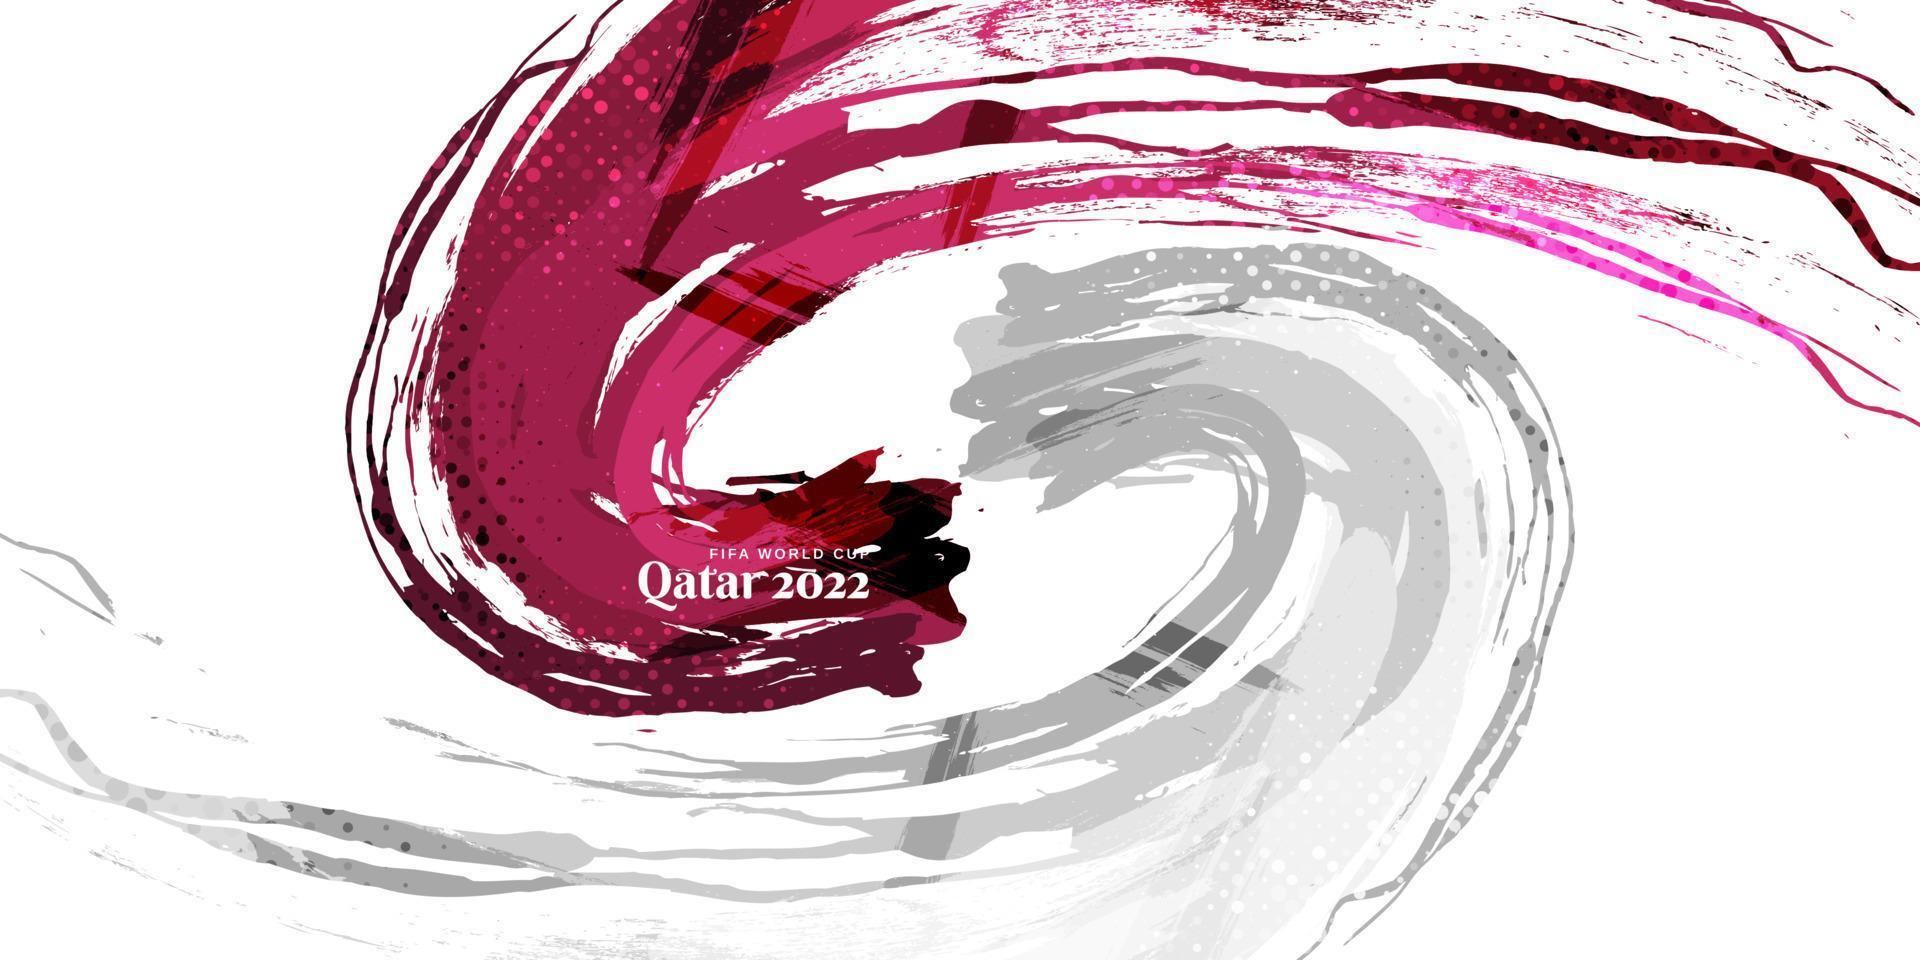 qatar vlag met borstel en grunge stijl. vlag van qatar met sport- concept, geschikt voor onafhankelijkheid dag en wereld kop 2022 achtergrond vector